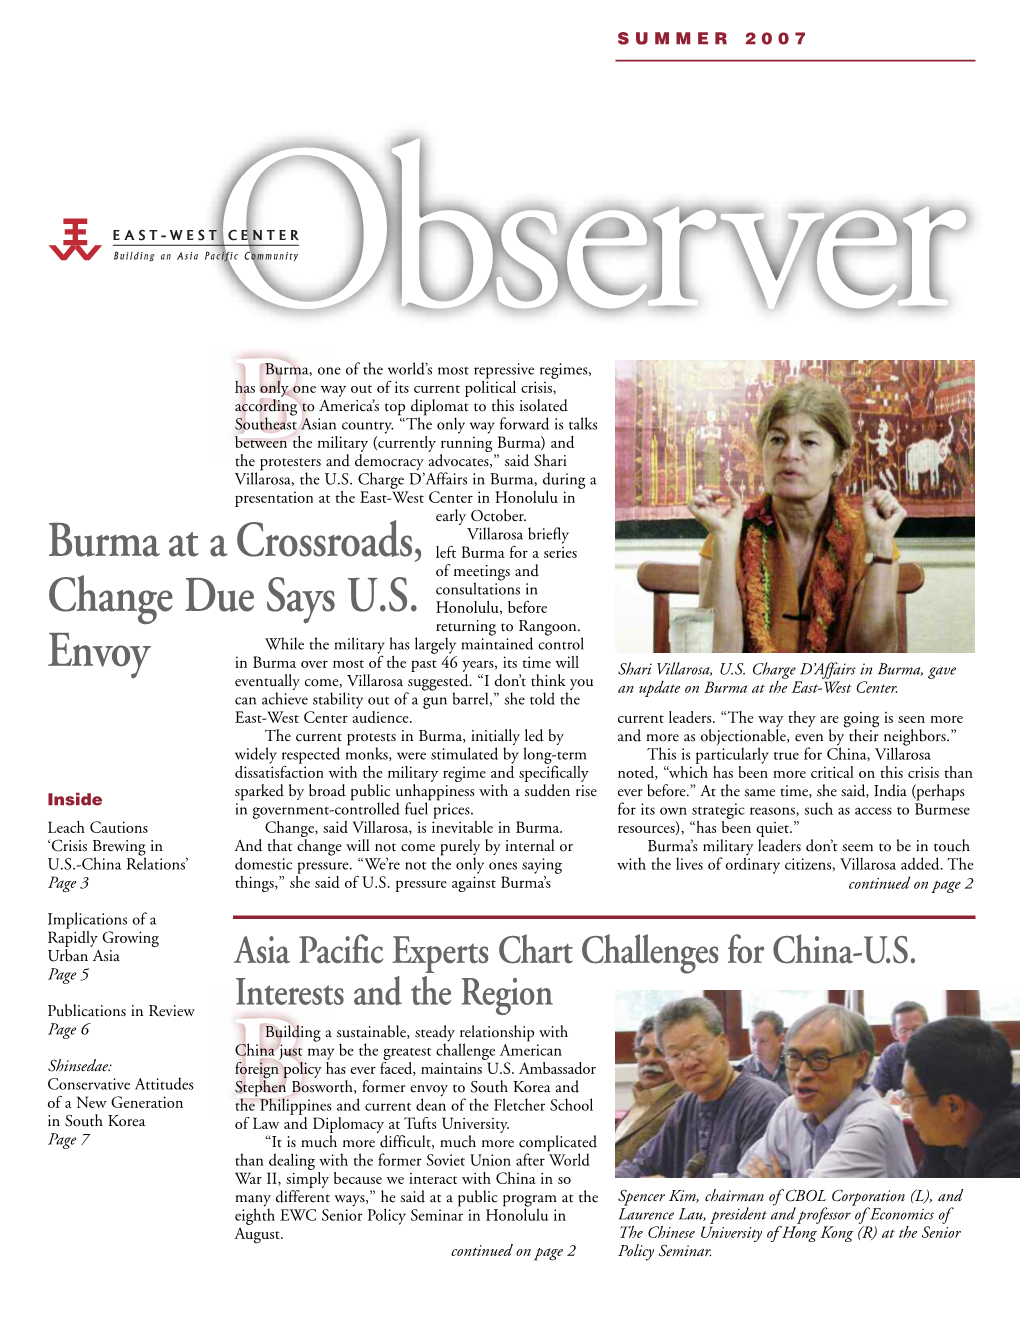 East-West Center Observer, Volume 11, No. 2